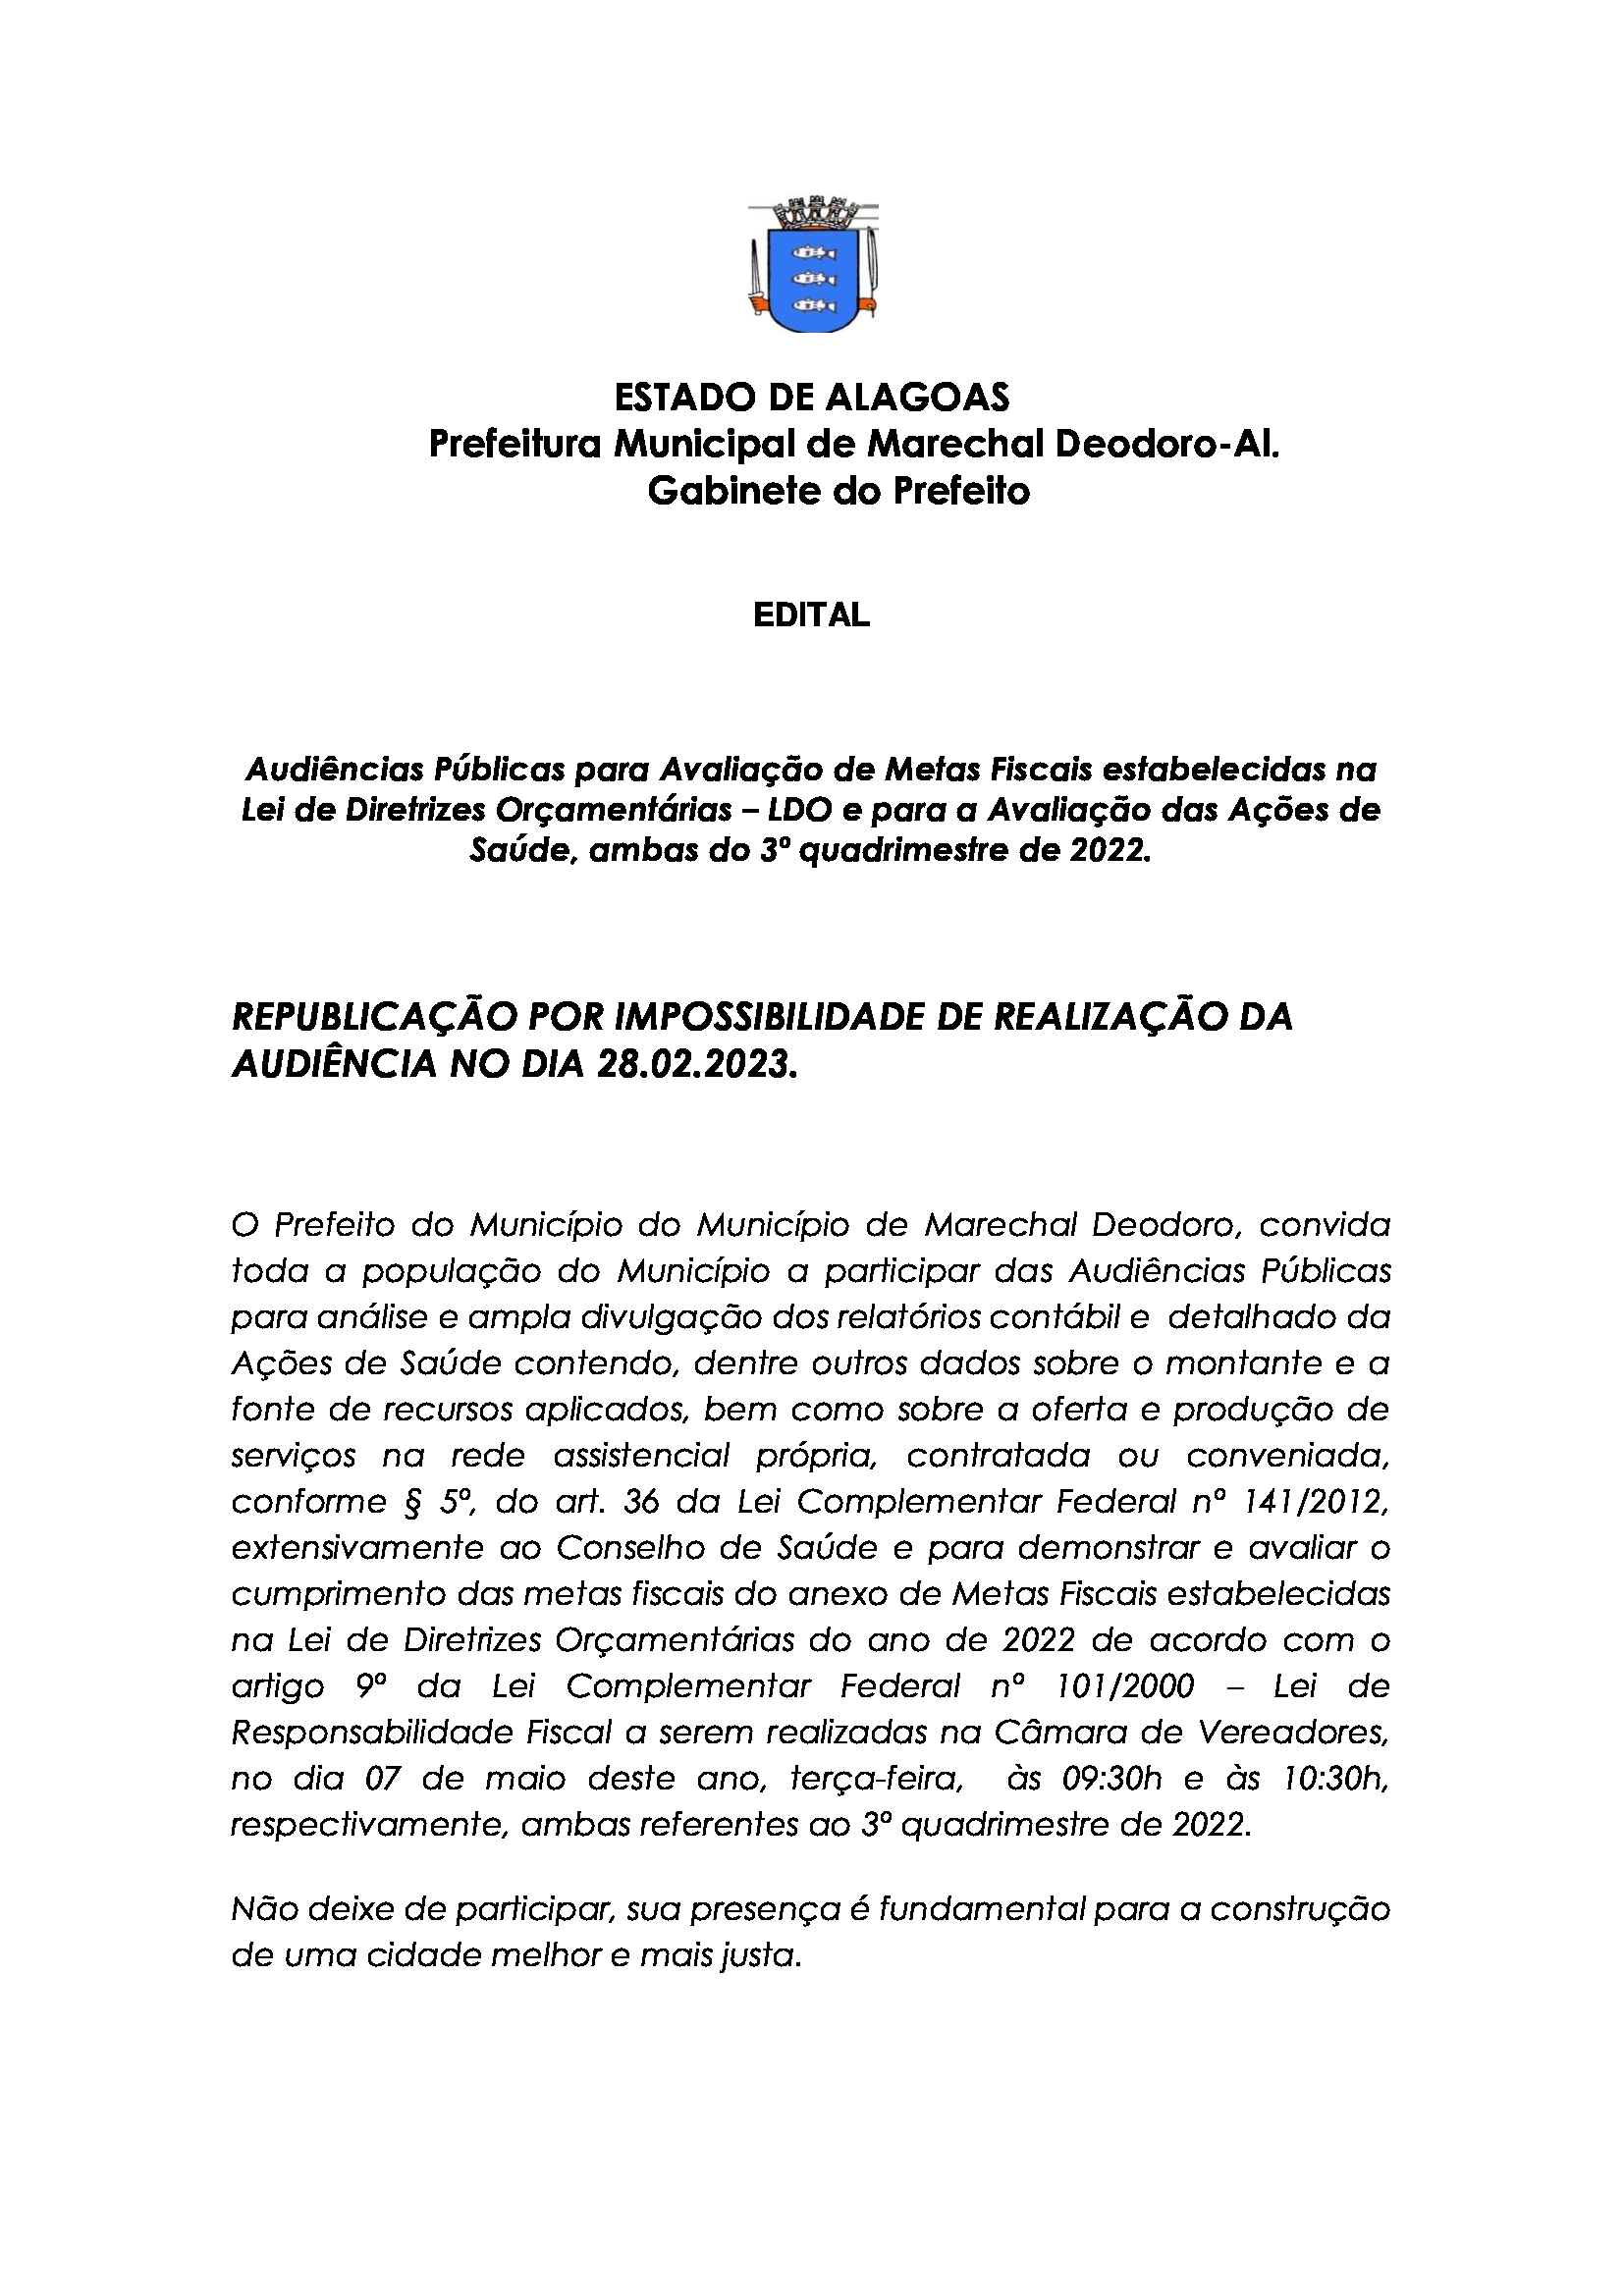 AUDIÊNCIA PÚBLICA - EDITAL (REPUBLICAÇÃO POR IMPOSSIBILIDADE DE REALIZAÇÃO DA AUDIÊNCIA NO DIA 28.02.2023).